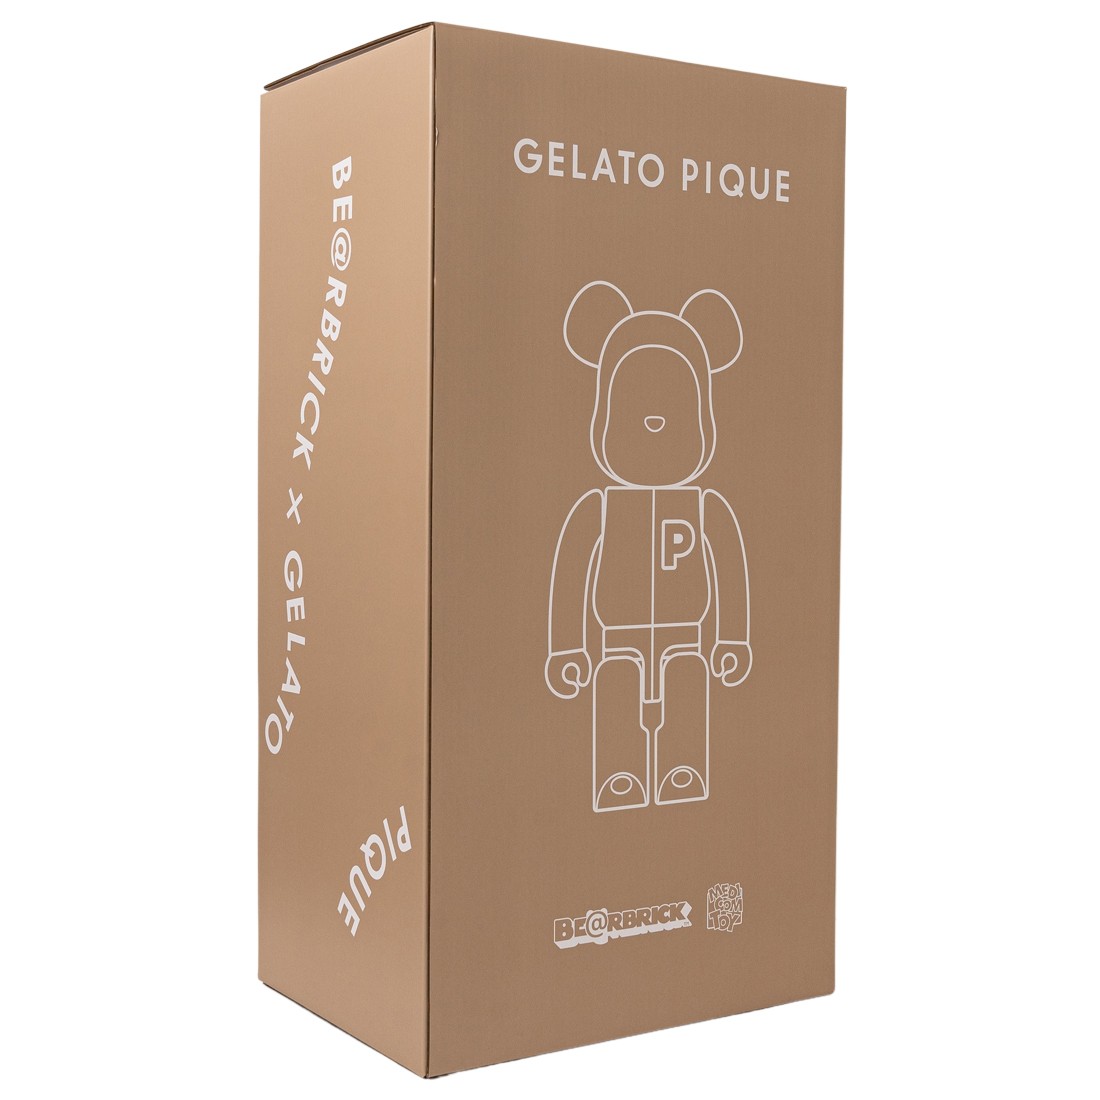 Medicom Gelato Pique Beige 1000% Bearbrick Figure (brown)